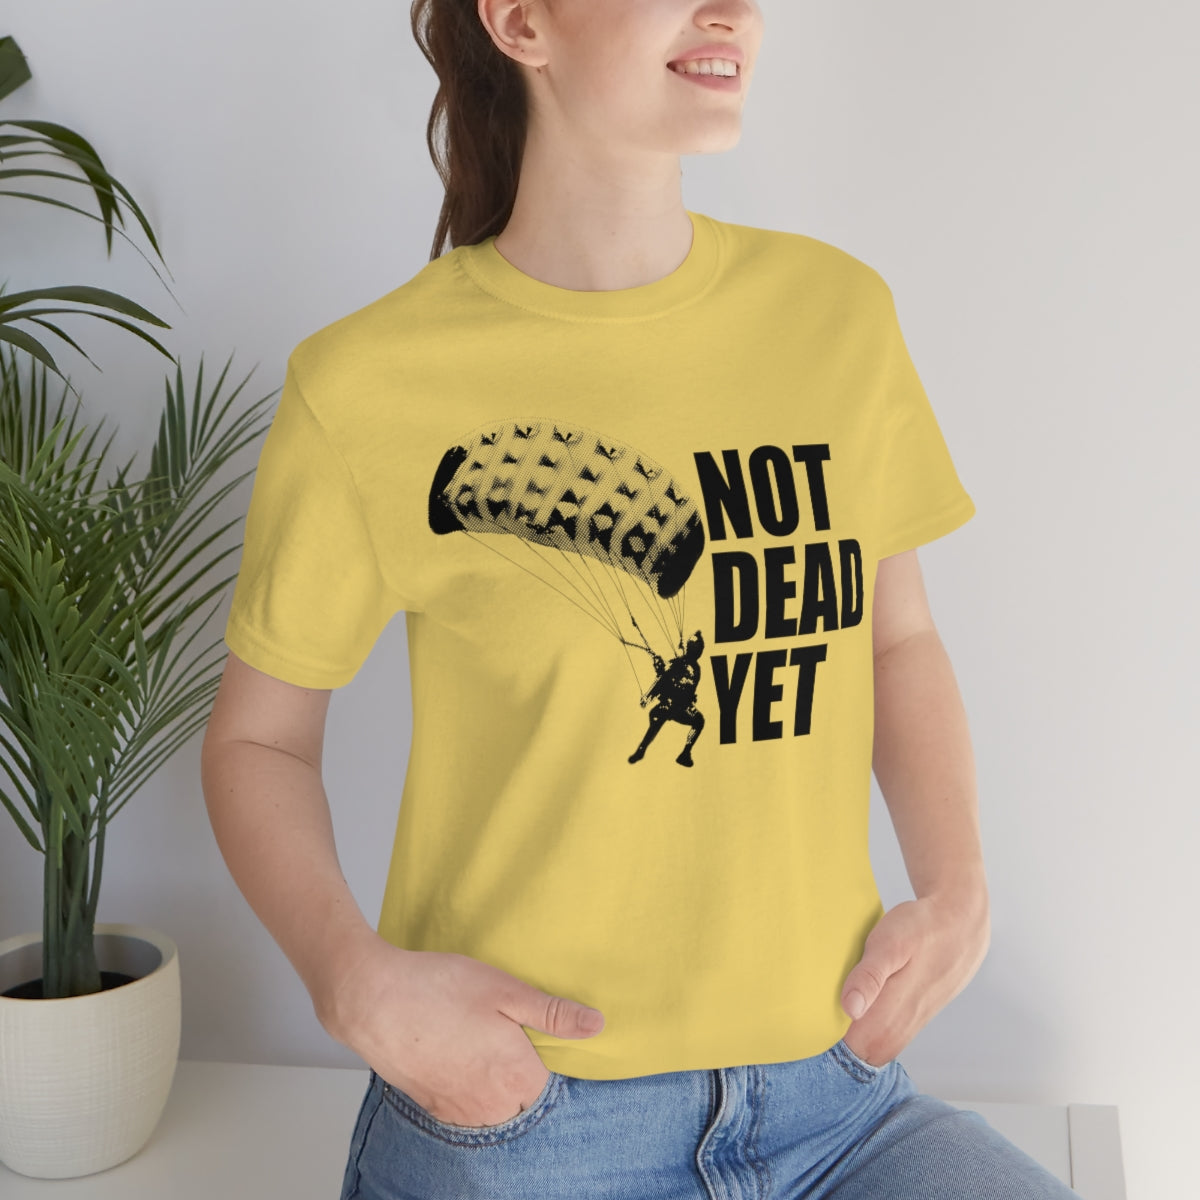 NOT DEAD YET T-Shirt